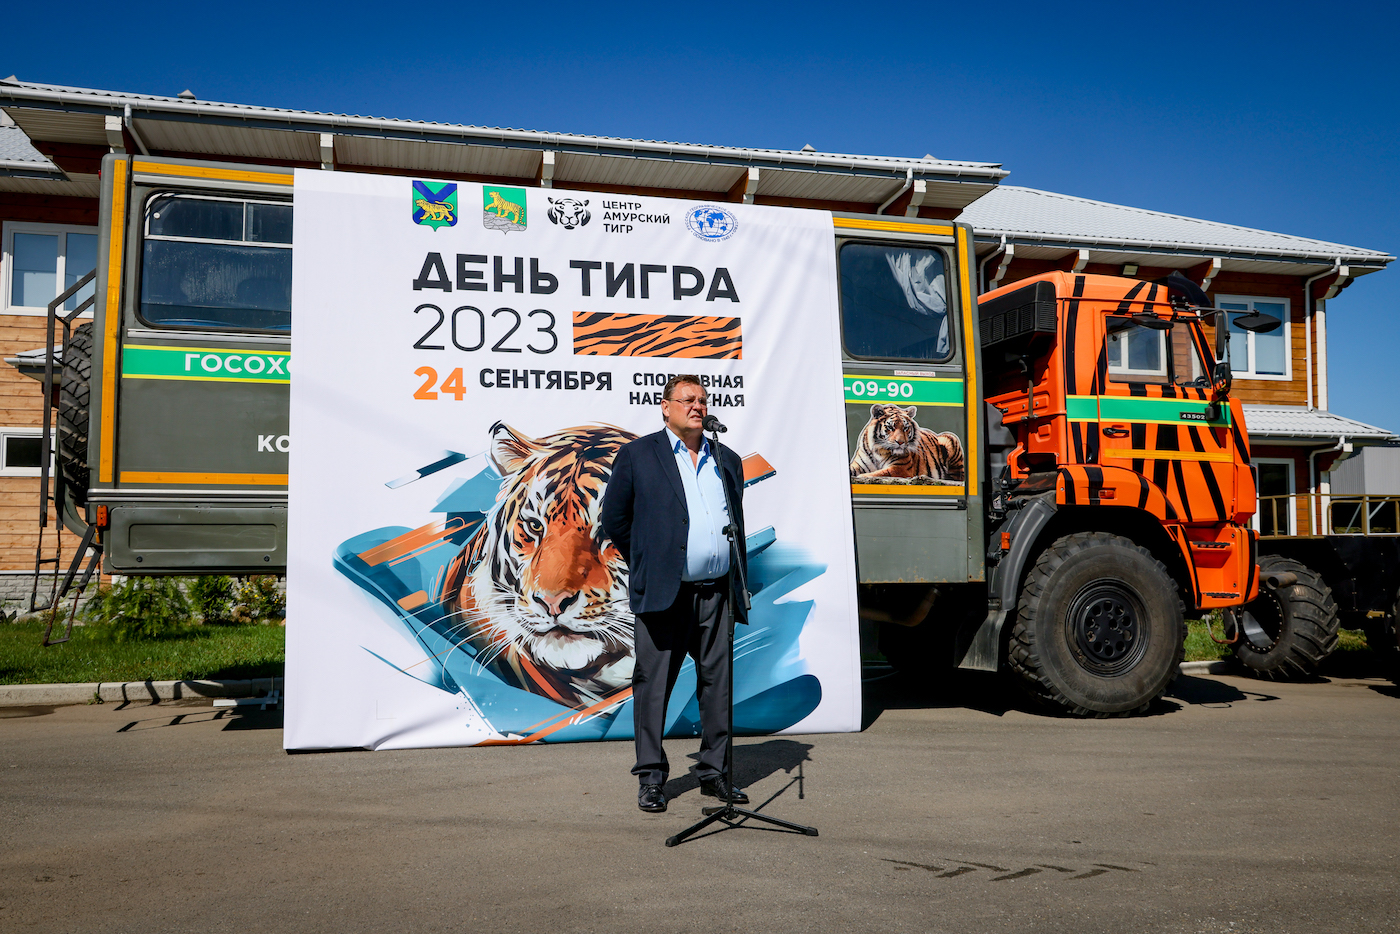 Защитники природы Приморского края получили подарки ко Дню тигра